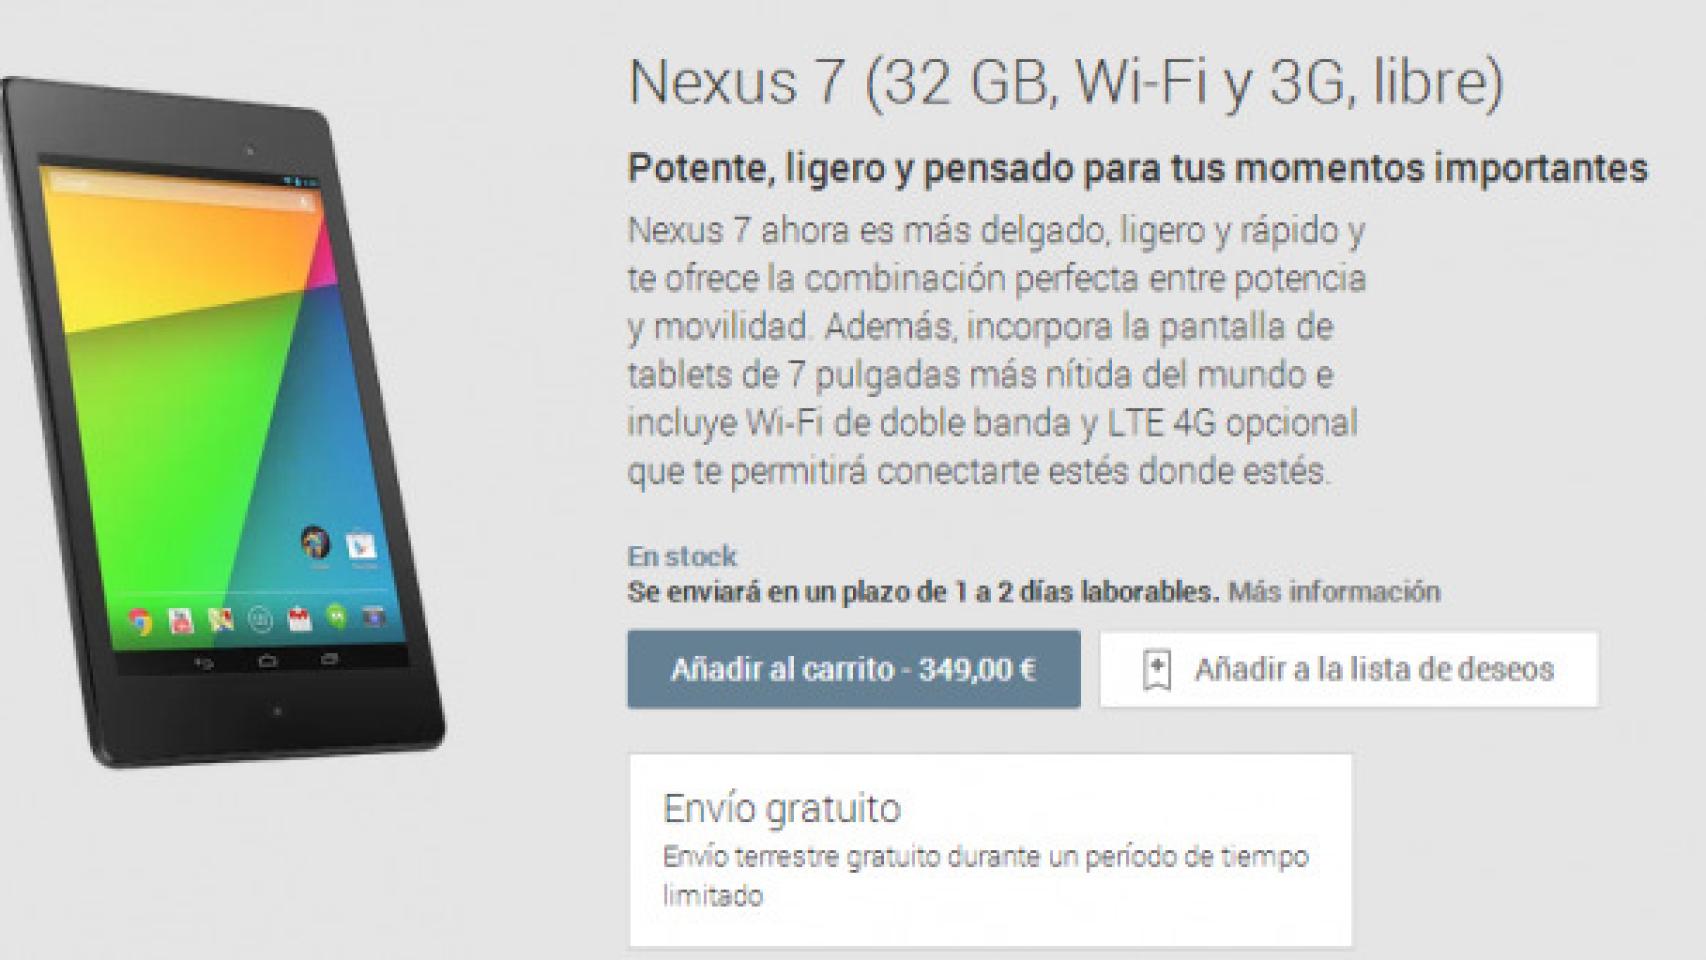 Nexus 7 LTE ya disponible en España y otros paises